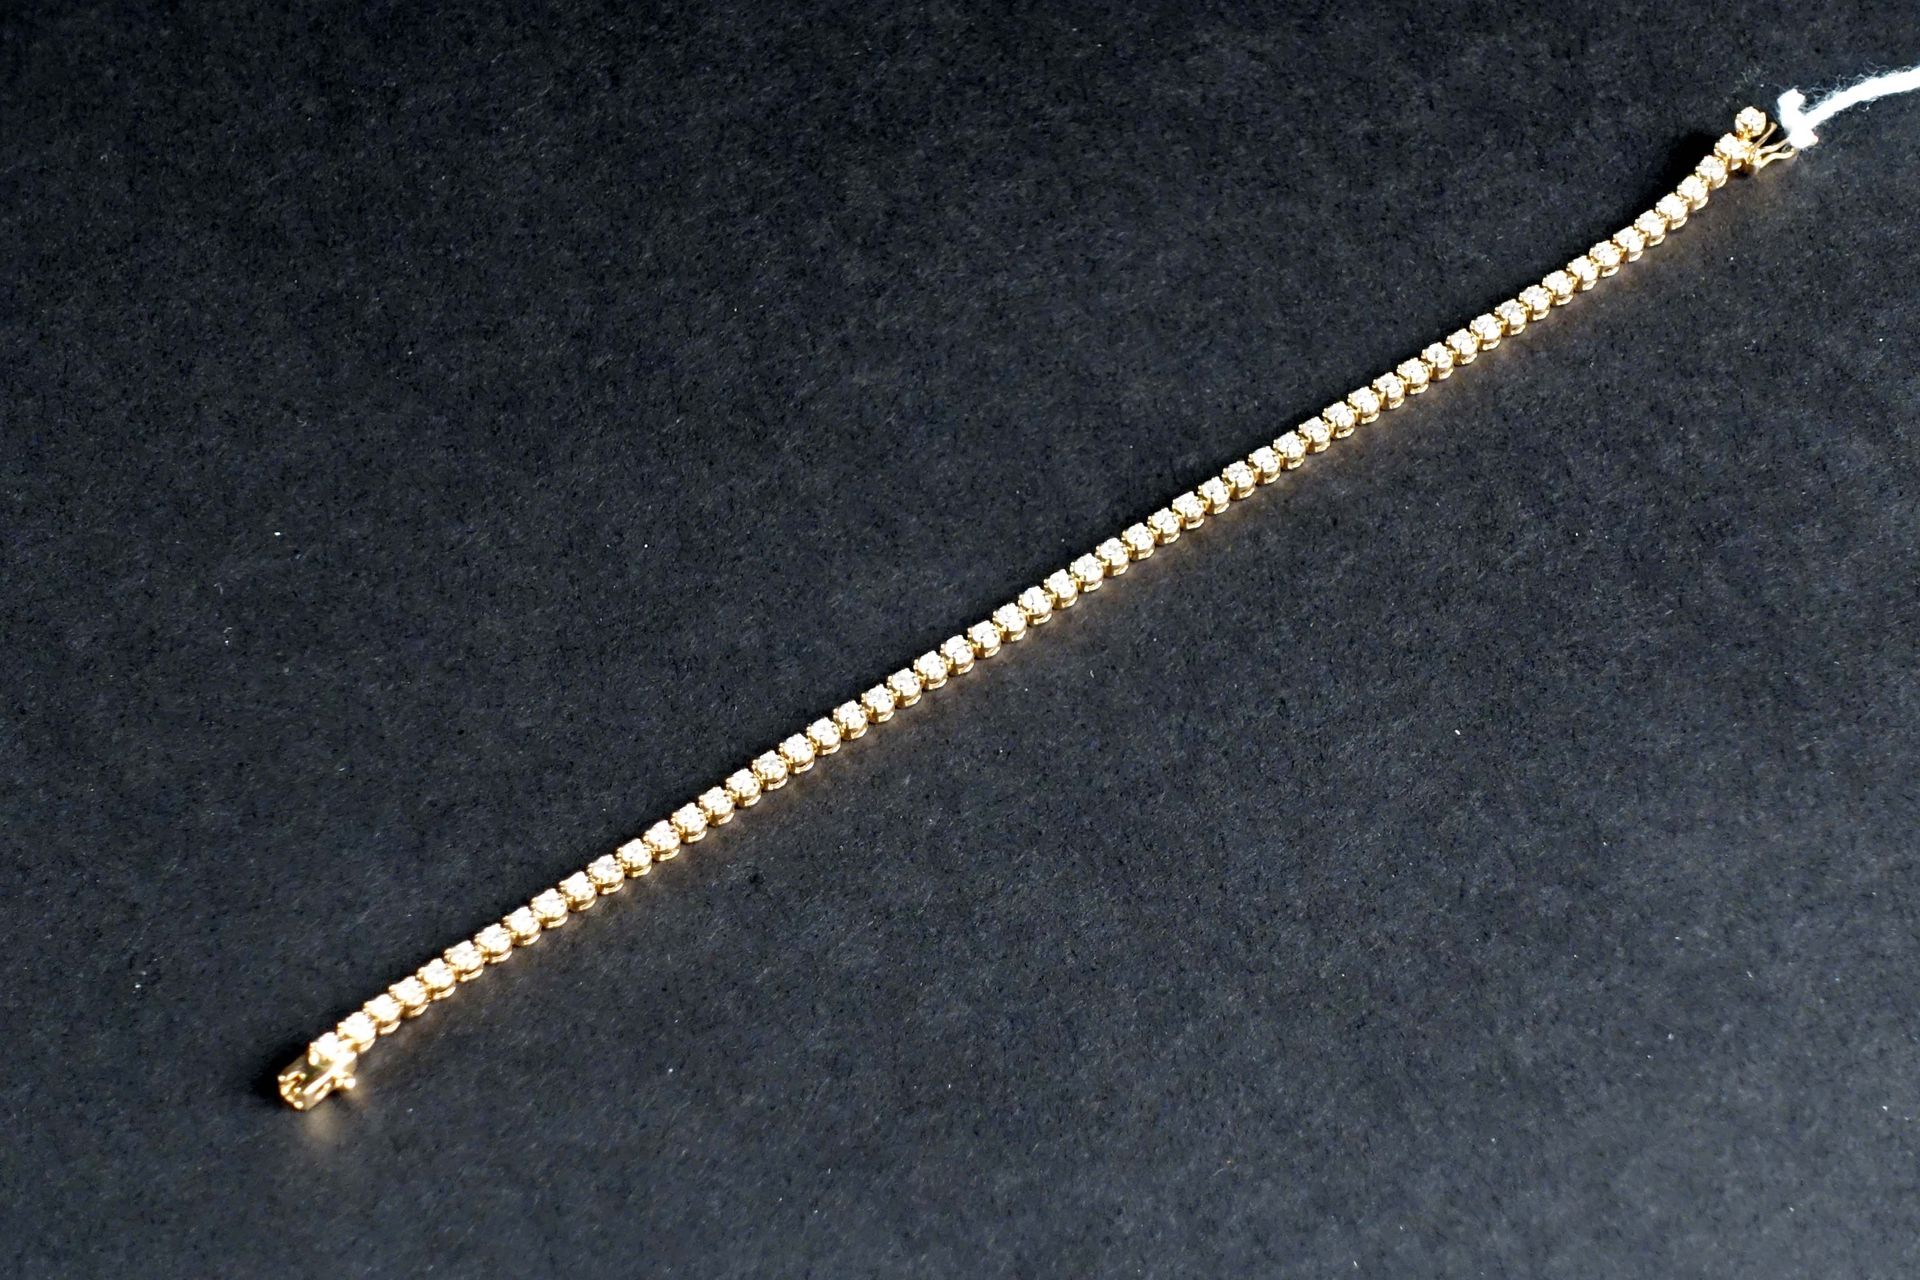 Bracelet Rivière. 镶嵌了57颗明亮式切割钻石（约2克拉）。镶嵌在18K黄金中。重量：8.6克。长度：18厘米。